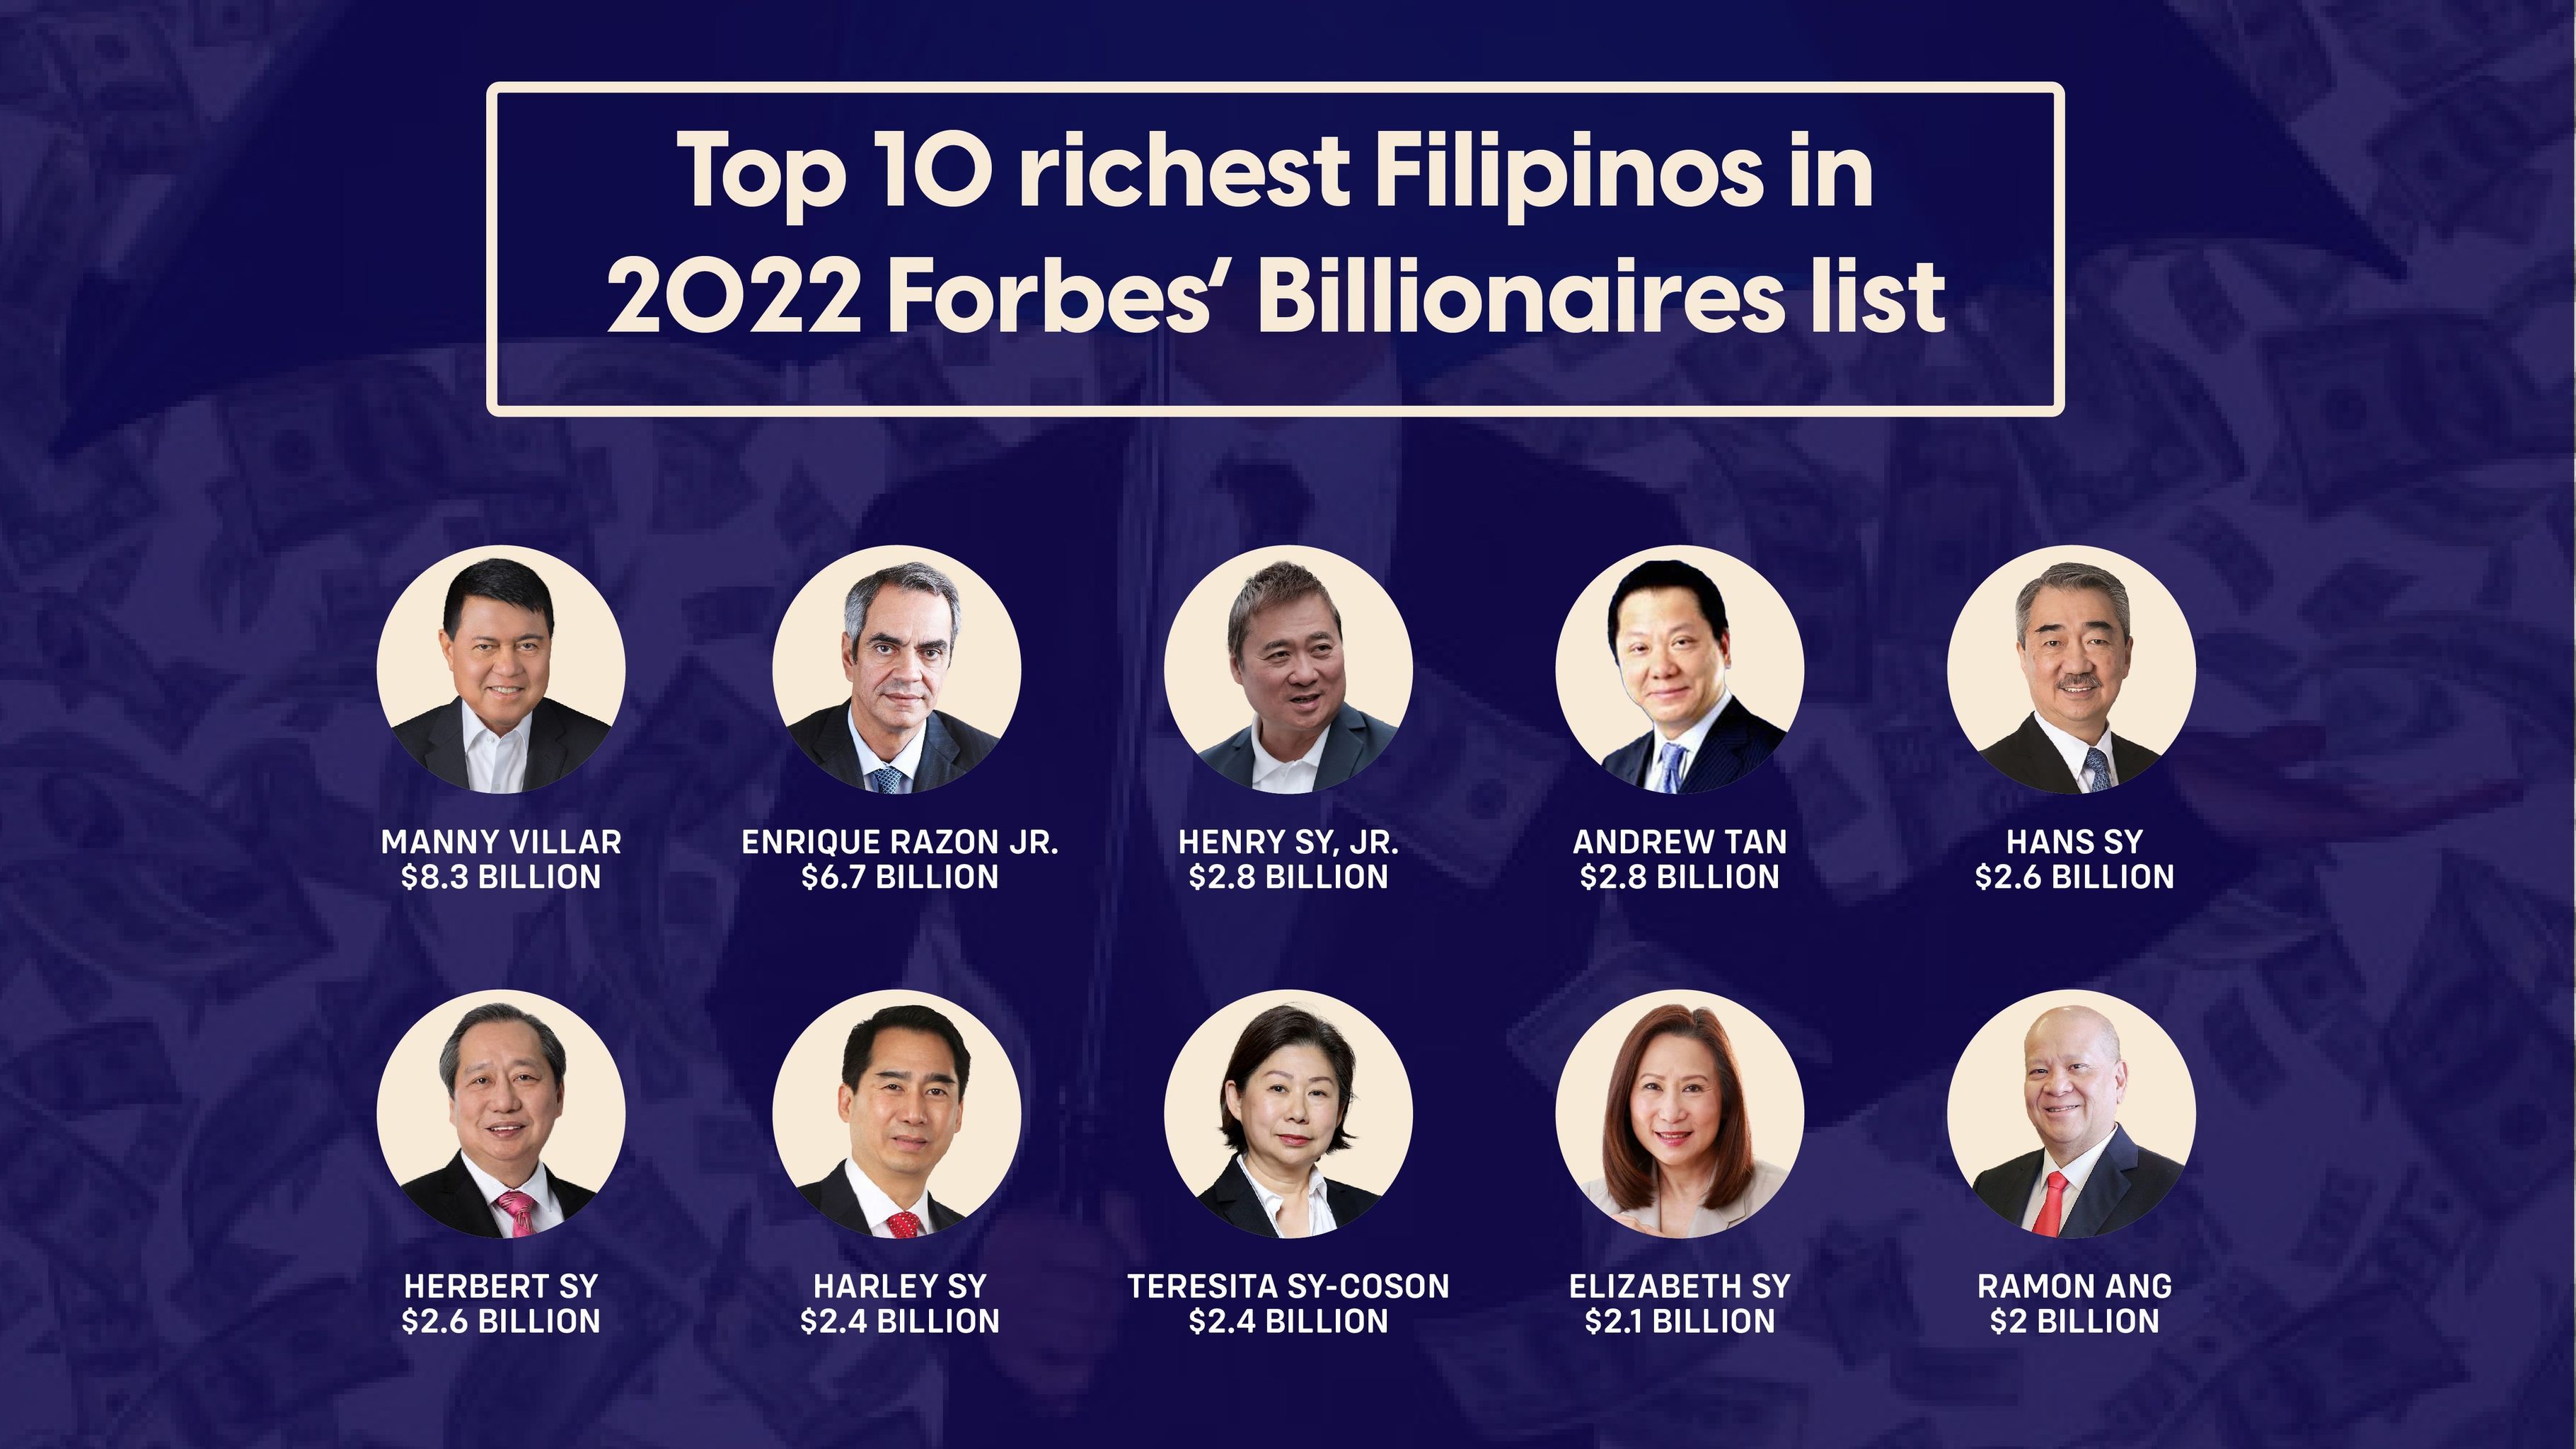 Top 10 richest Filipinos in 2022 Forbes’ Billionaires list